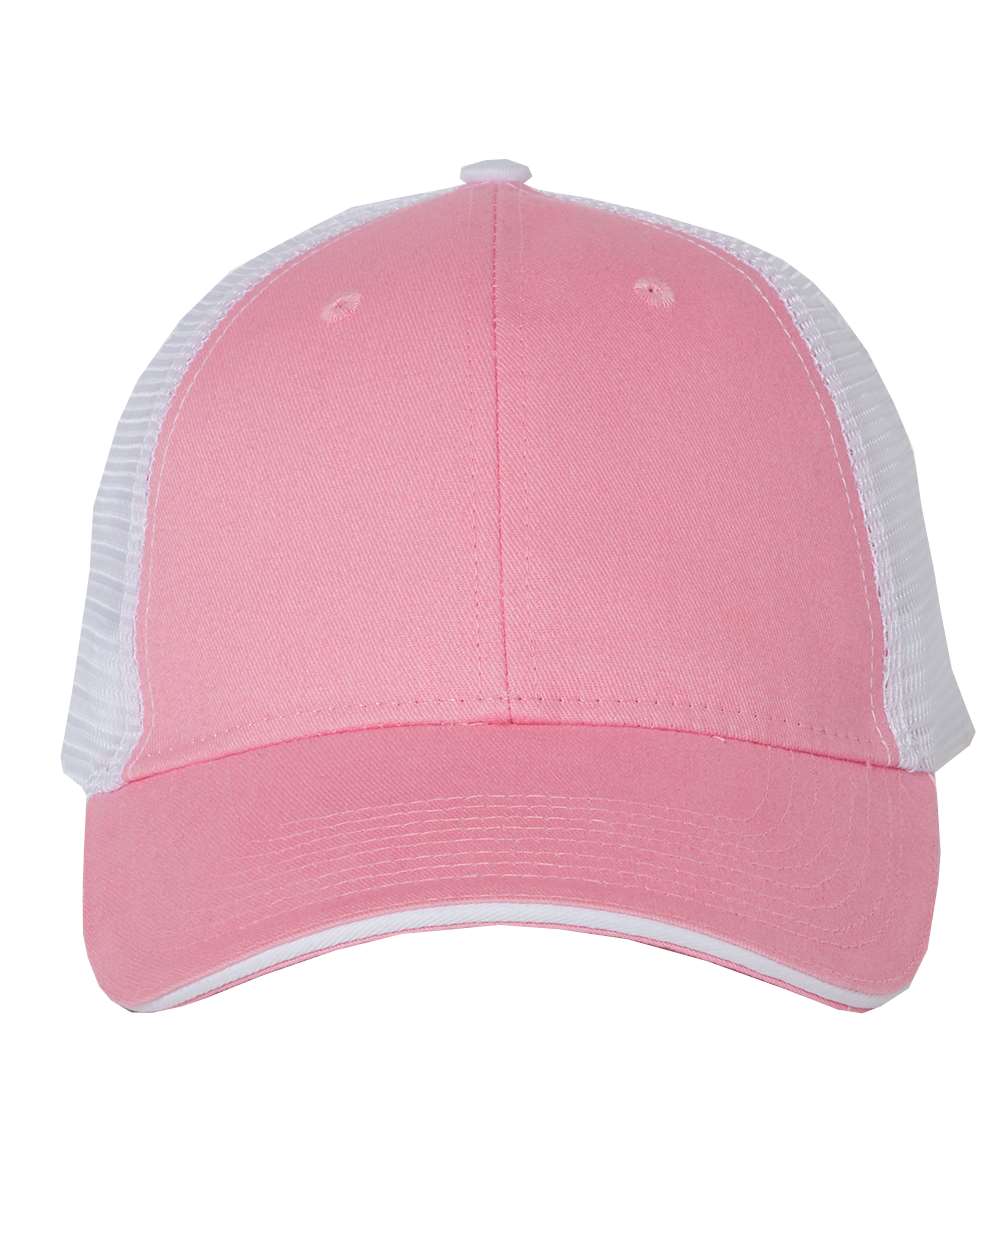 Sandwich Trucker Cap - Pink/White